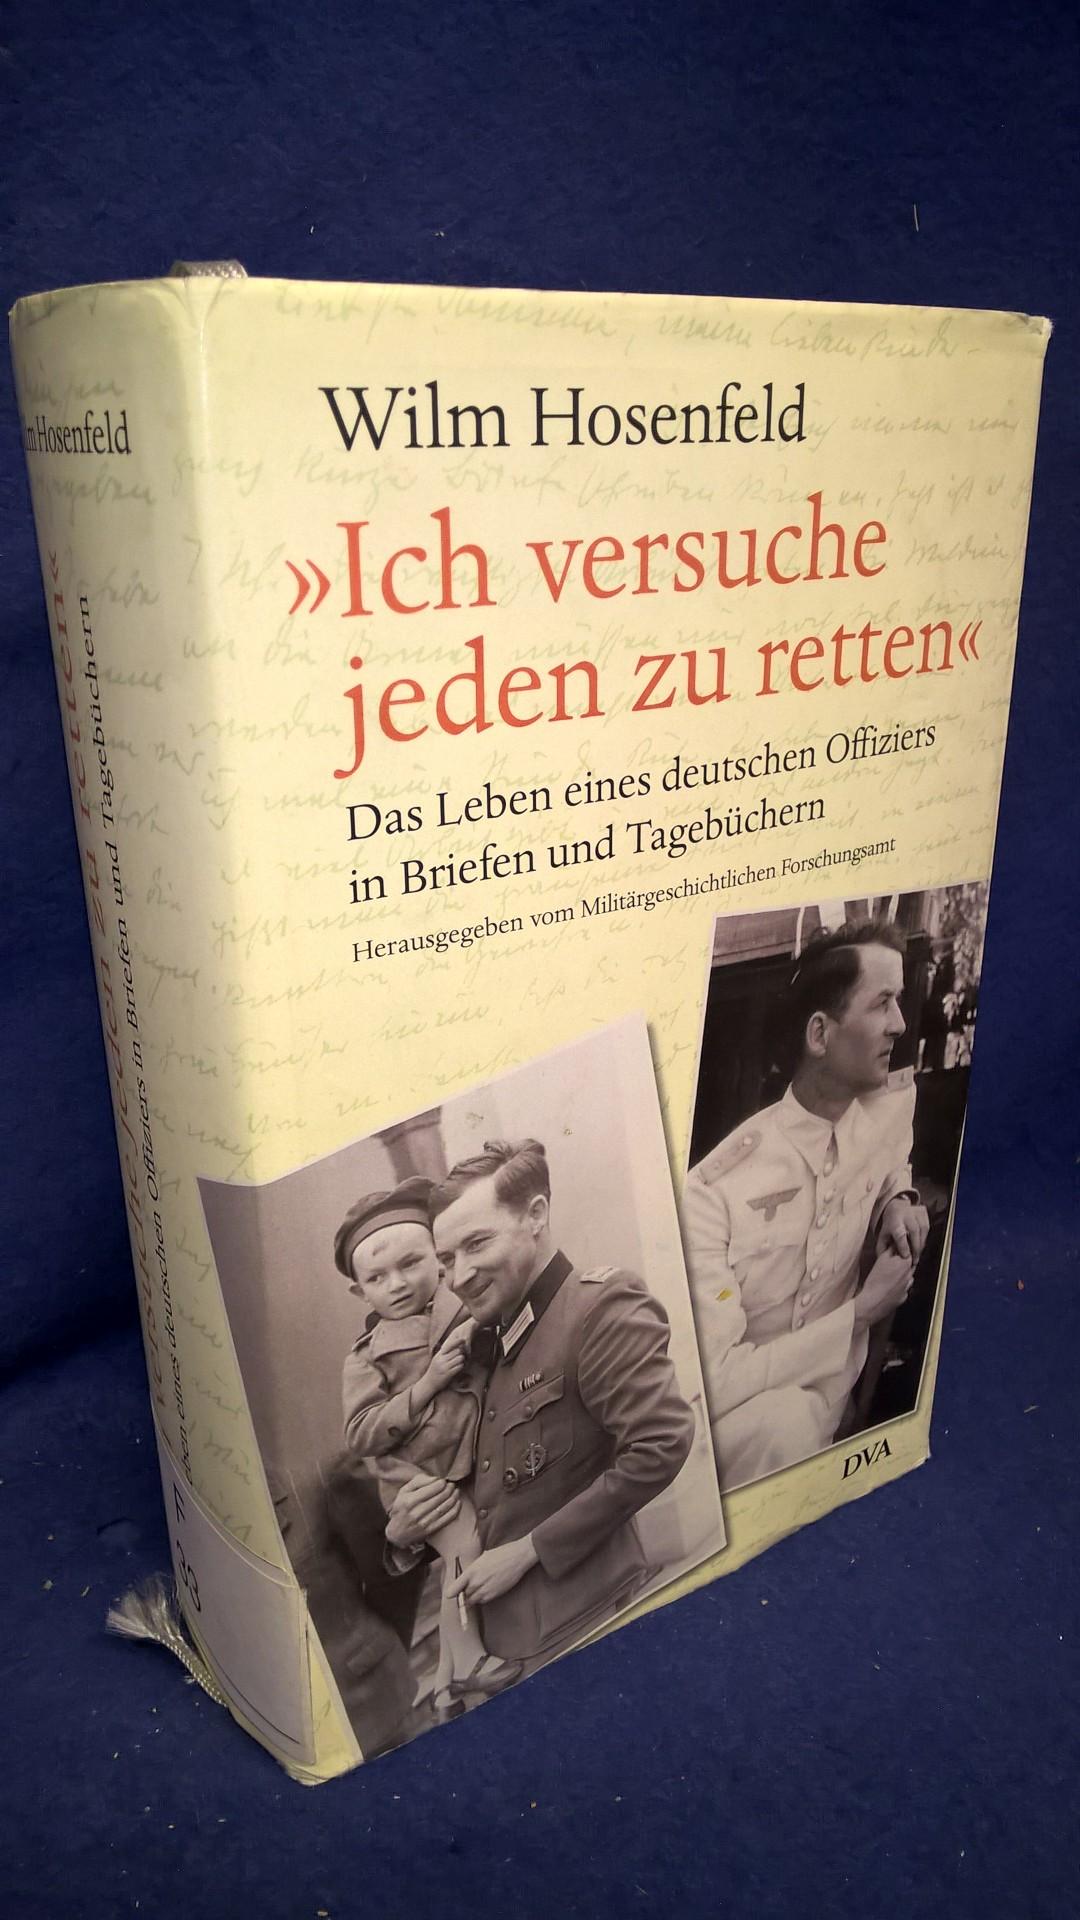 Wilm Hosenfeld "Ich versuche jeden zu retten" - Das Leben eines deutschen Offiziers in Briefen und Tagebüchern